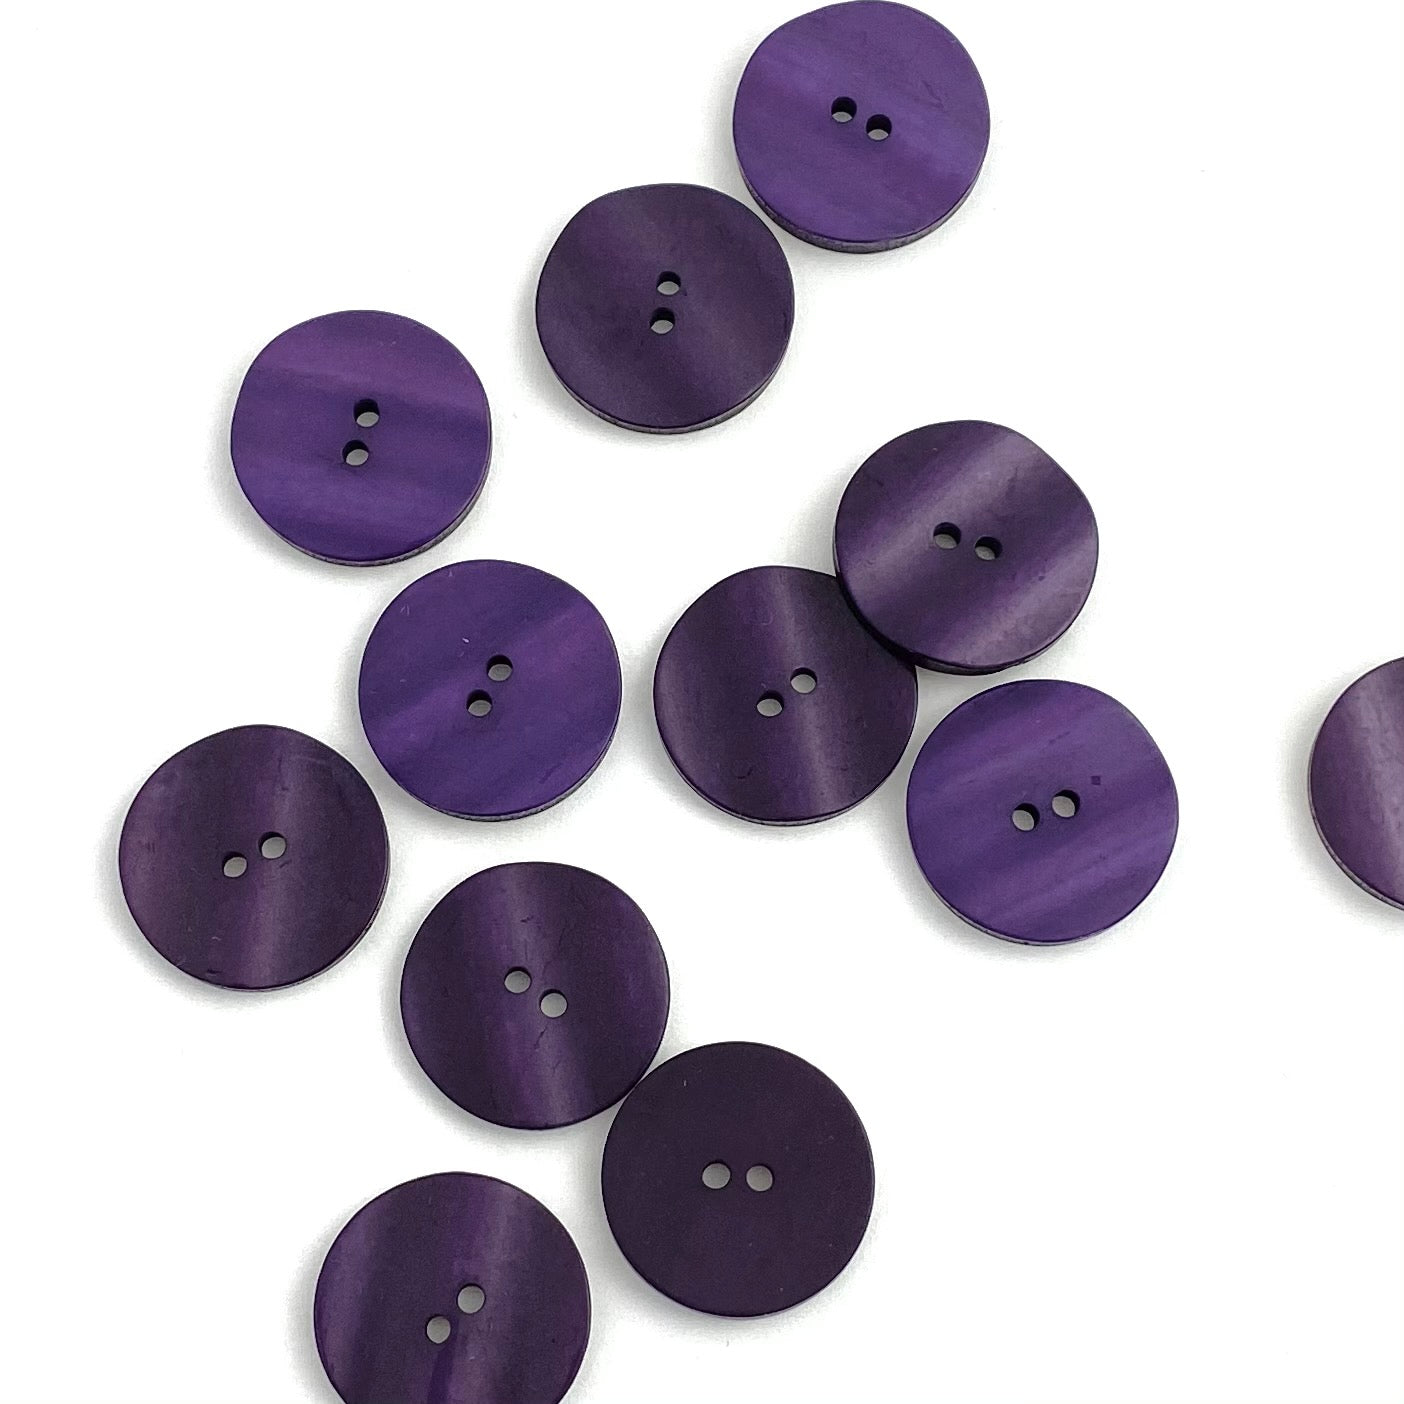 23mm diameter Deep Purple Wavy Buttons